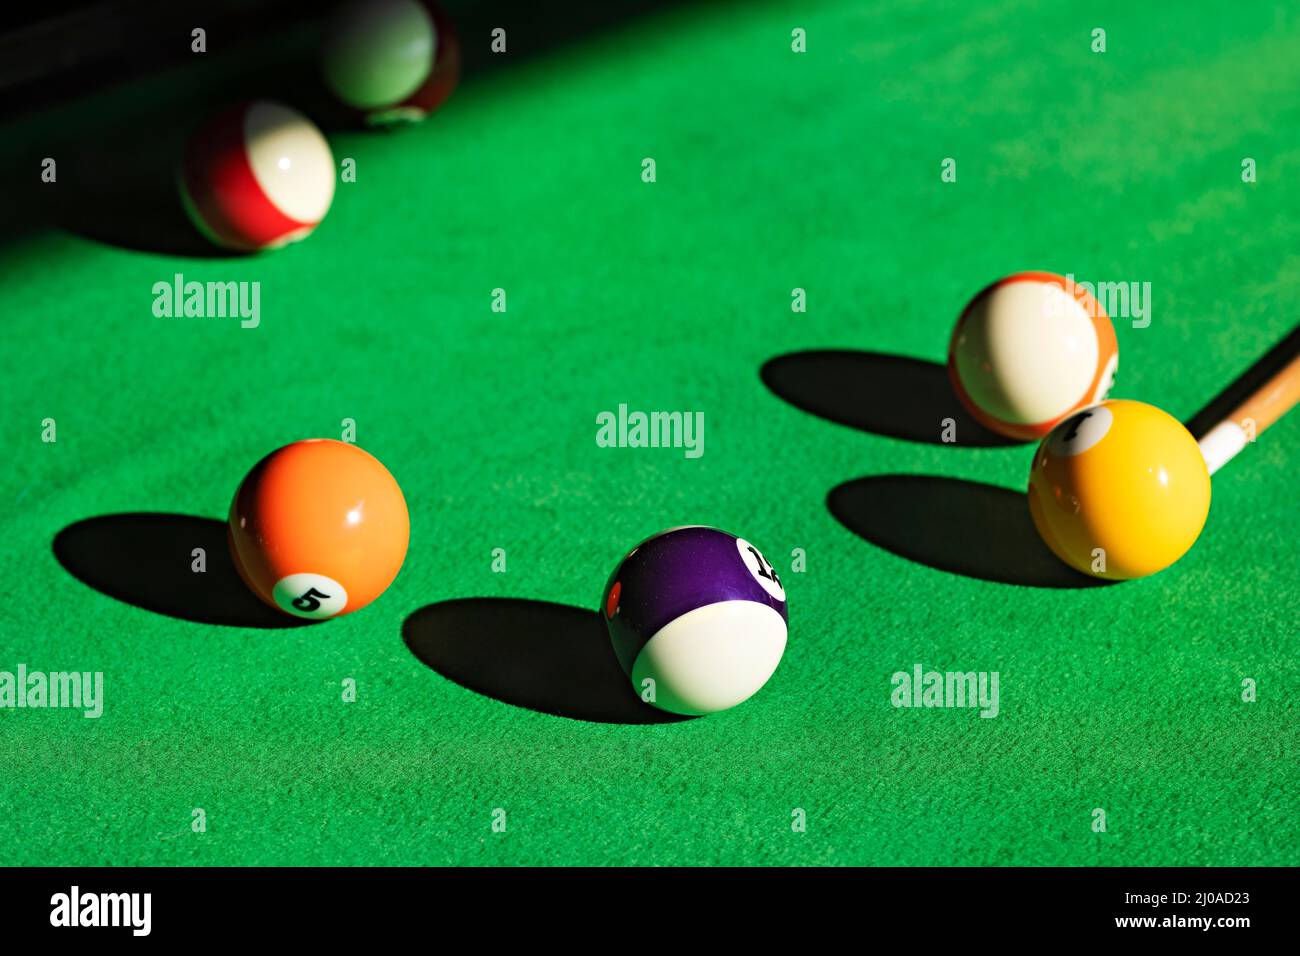 Ballarat Australia /  Billiard Balls positioned on a felt covered table. Stock Photo